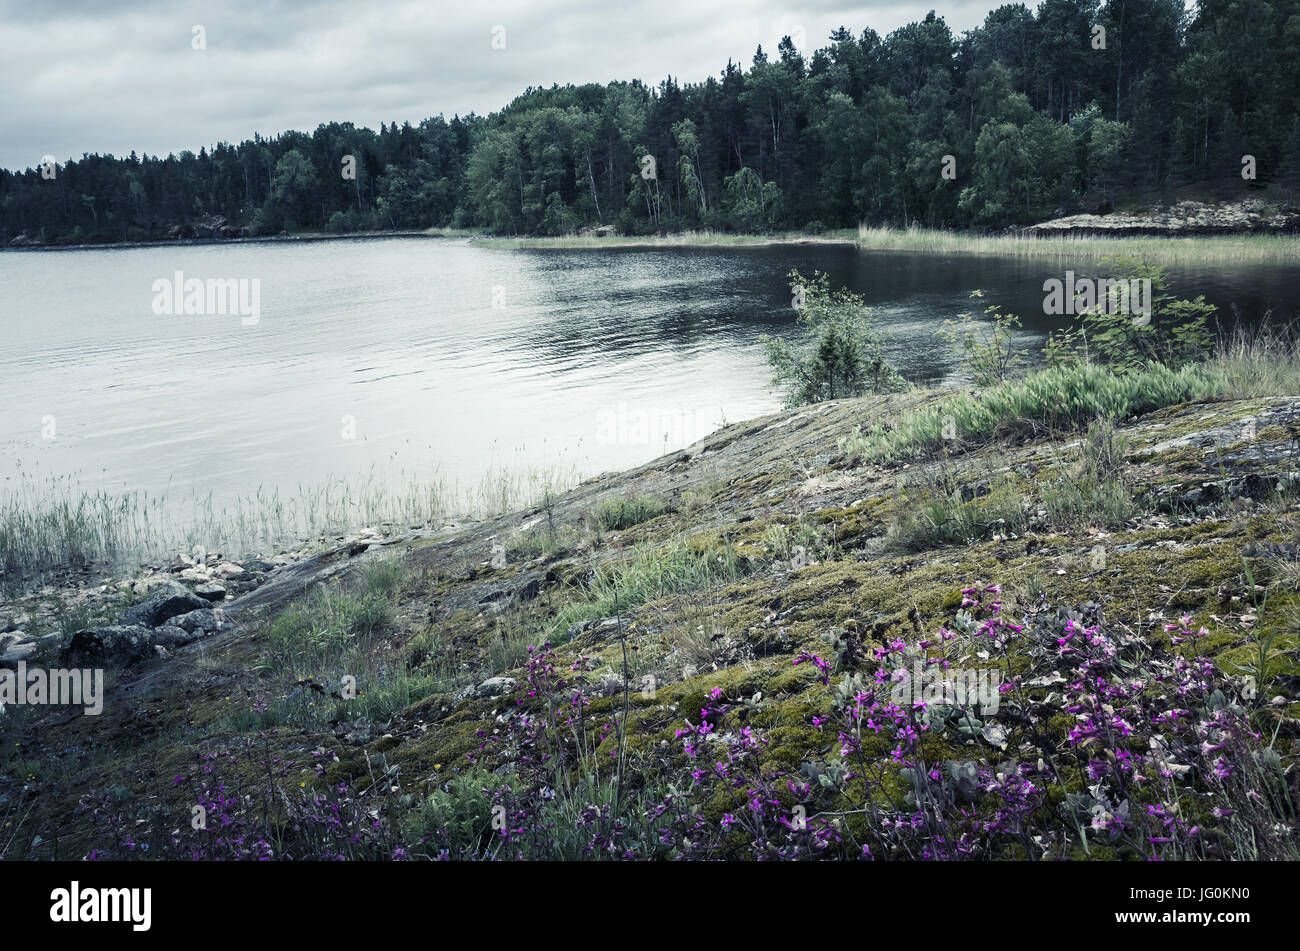 Paysage lac encore froid en journée d'été. 3020 f, la Russie. Filtre de correction tonale vintage, blue mood Banque D'Images